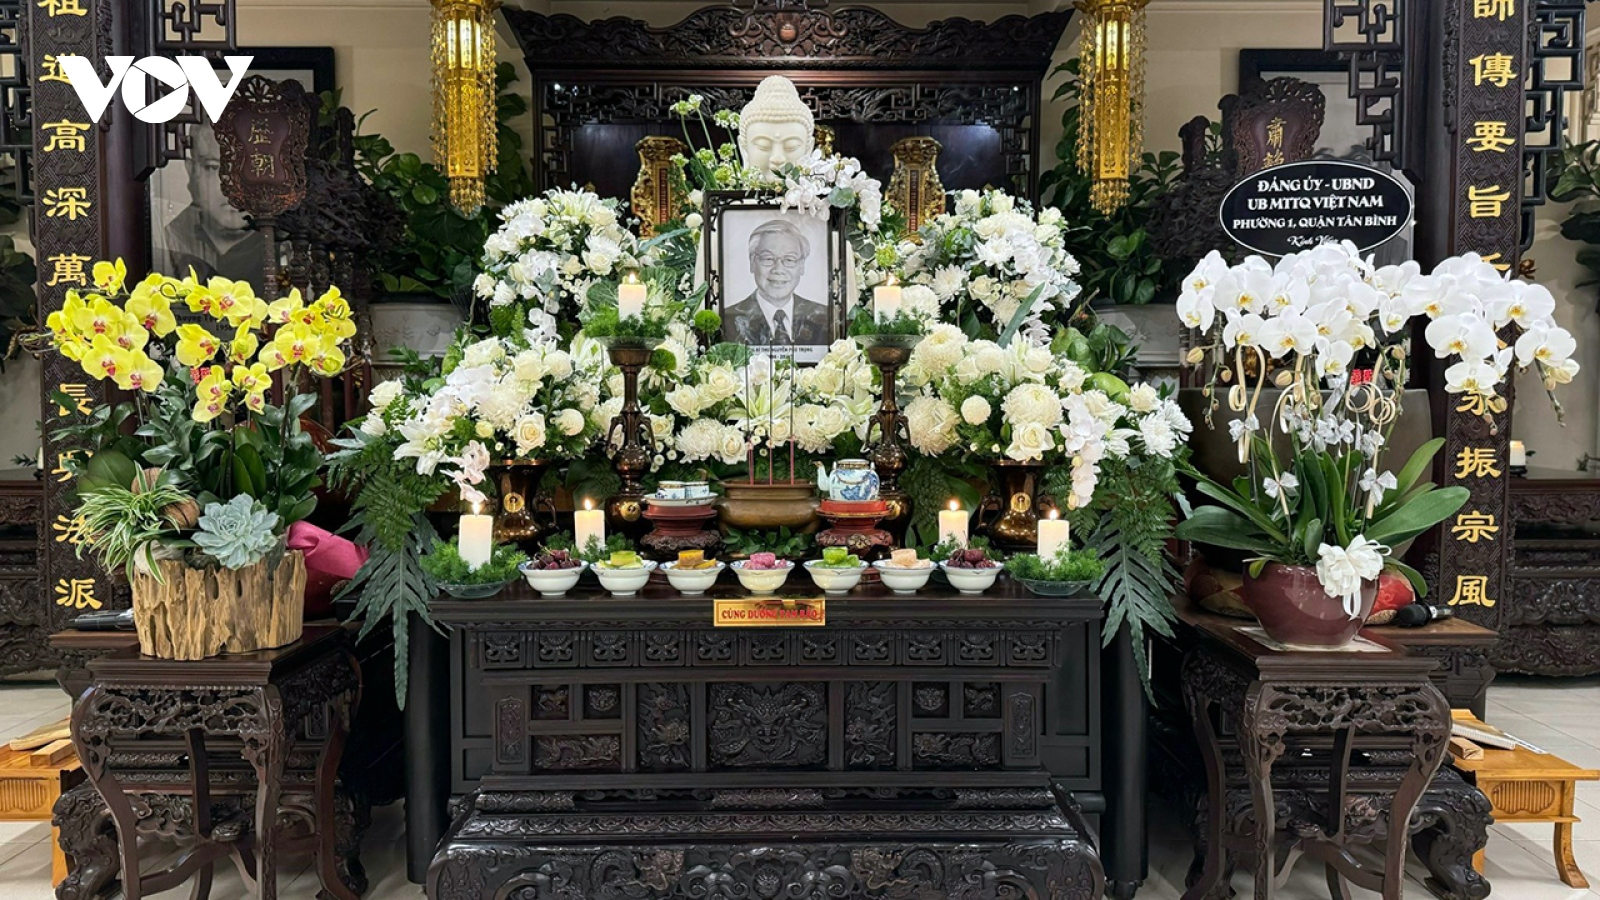 Giáo hội Phật giáo TP.HCM tưởng niệm Tổng Bí thư Nguyễn Phú Trọng